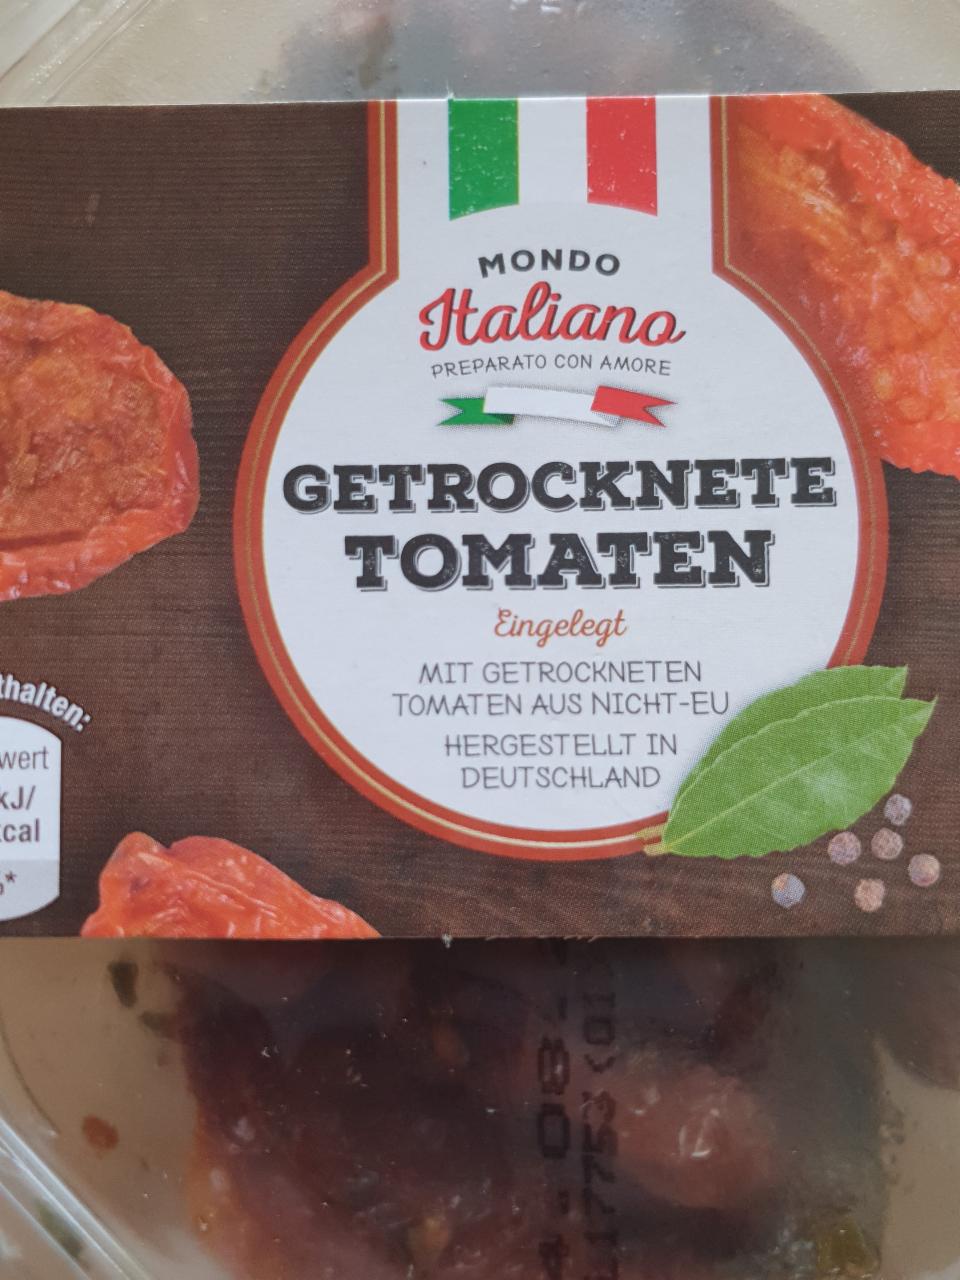 Getrocknete Tomaten Mondo Italiano - nutriční a hodnoty kJ kalorie